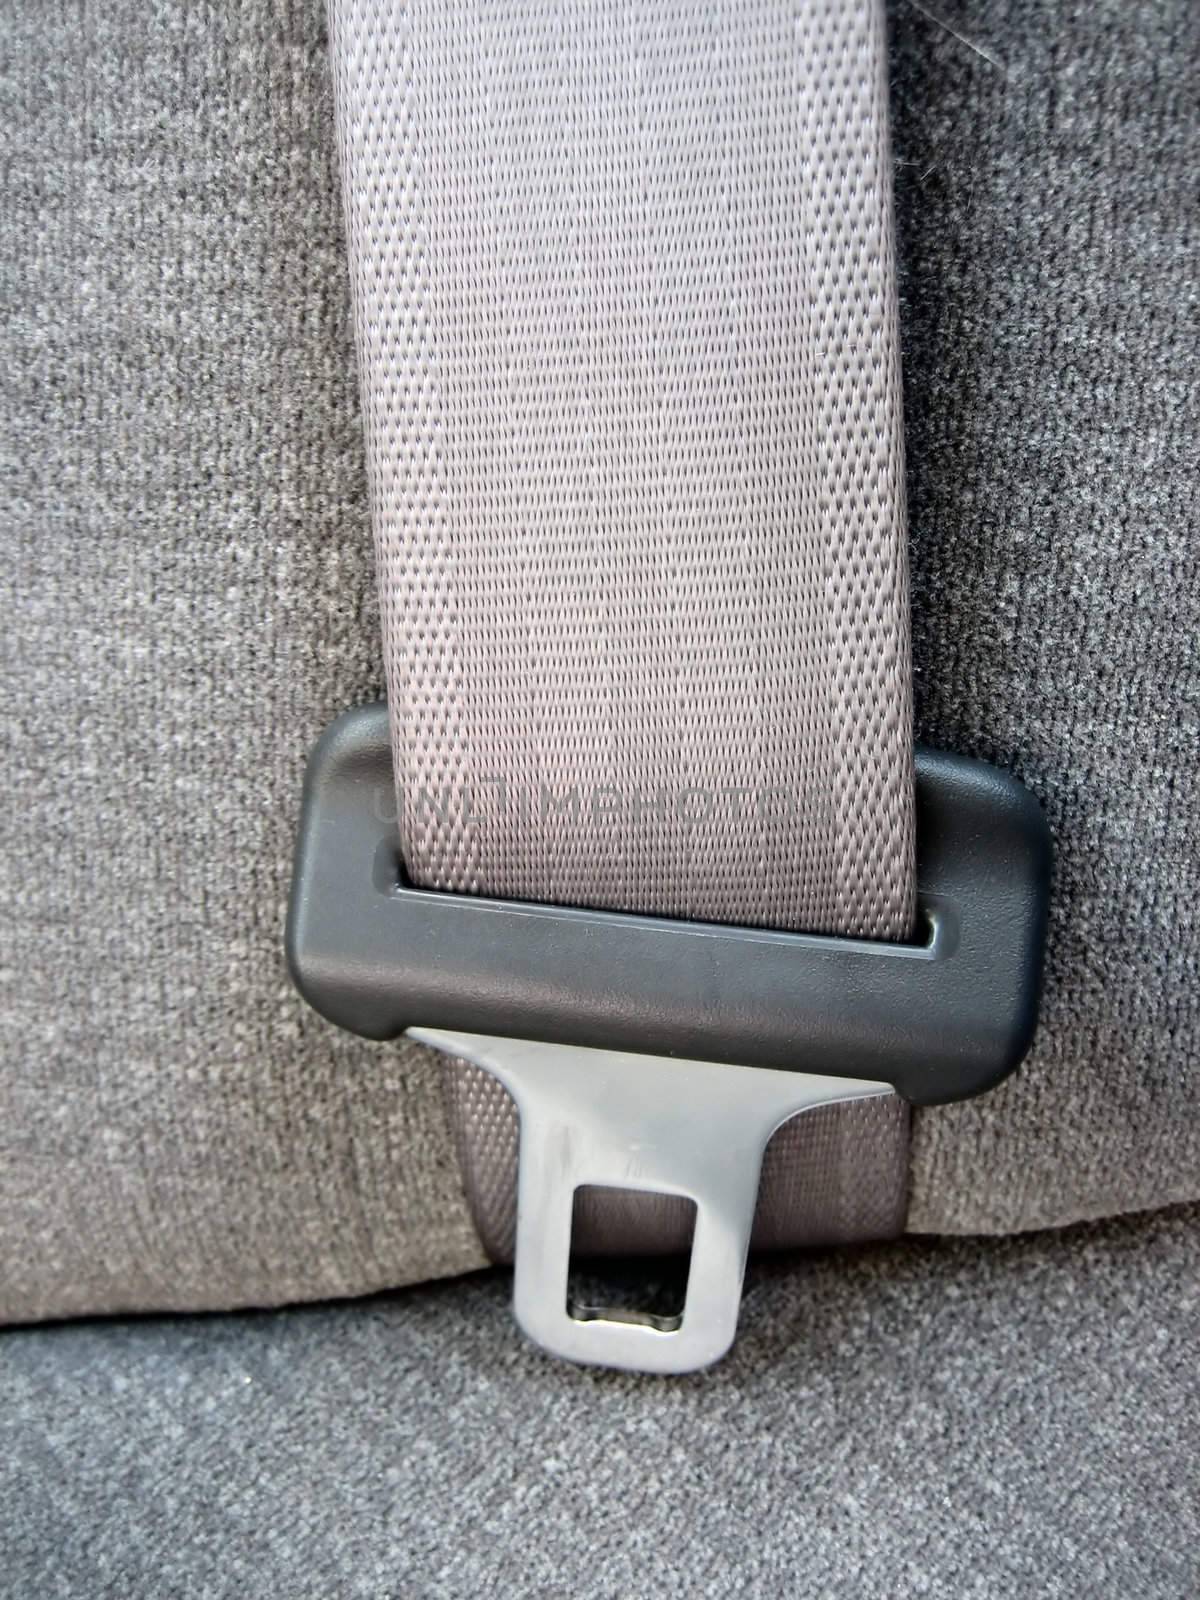 Seat belts in cars by albln